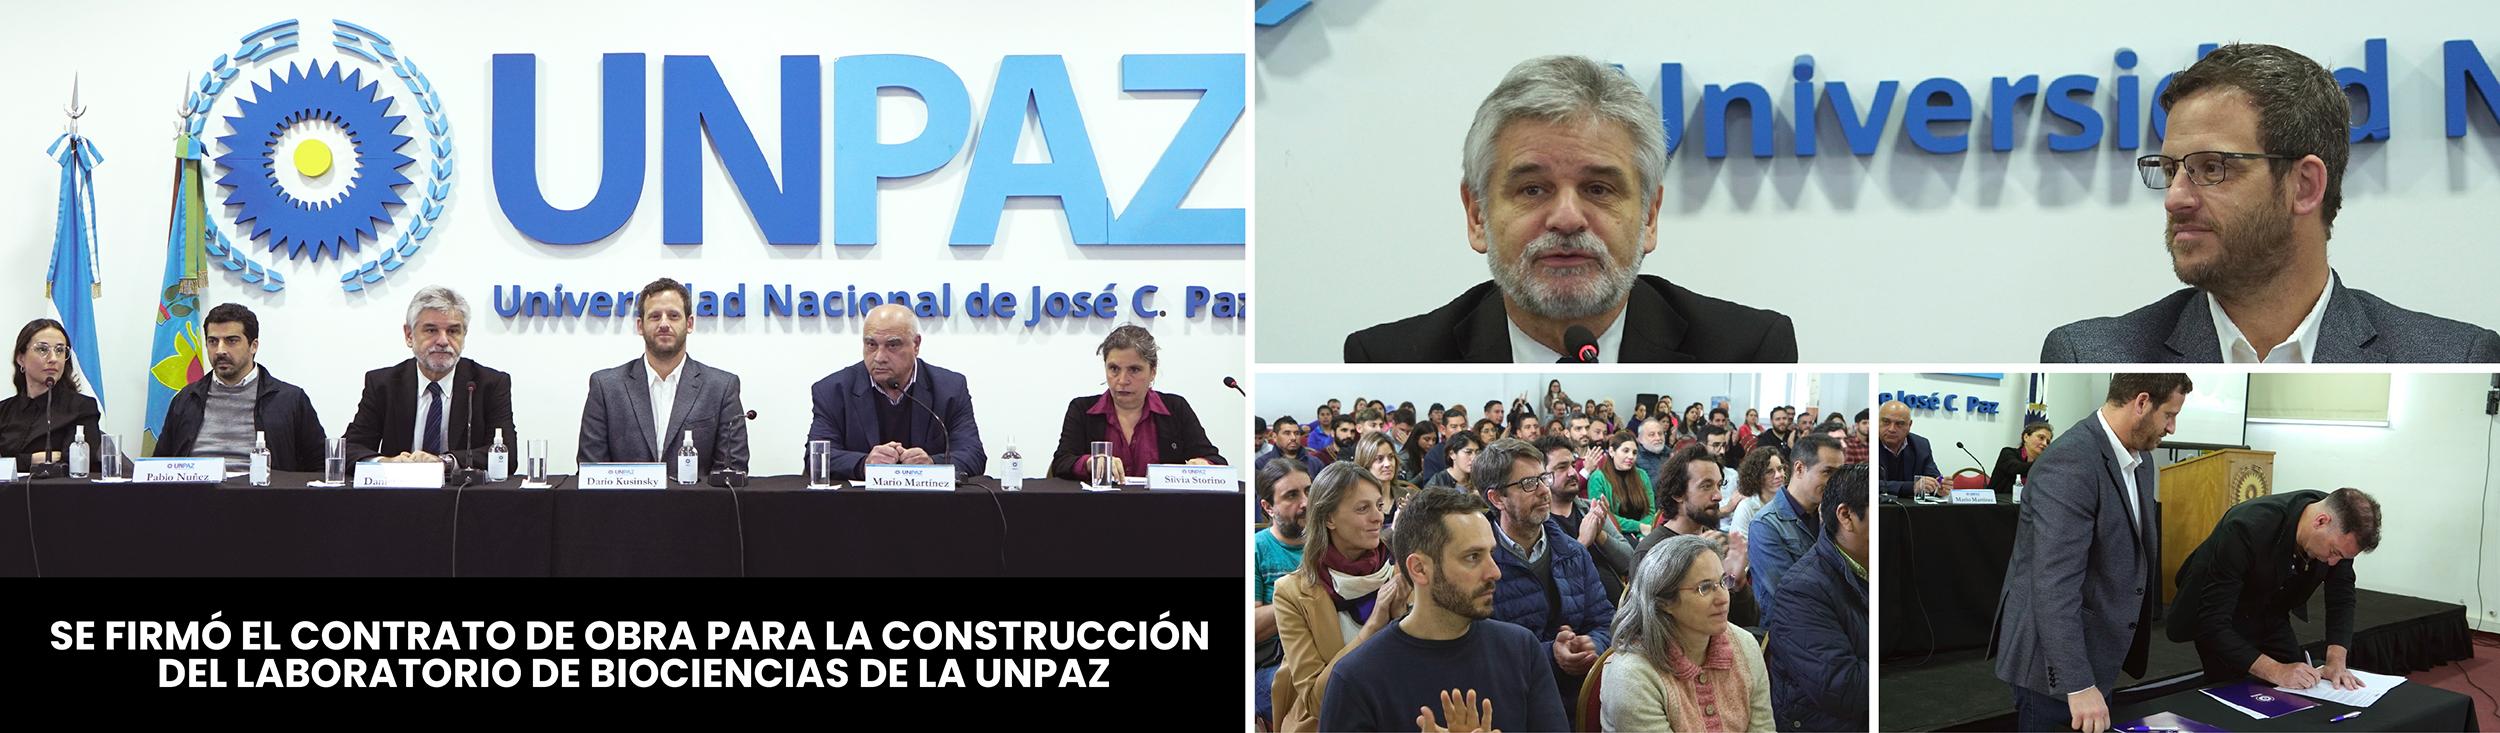 Se firmó el contrato de obra para la construcción del Laboratorio de Biociencias de la UNPAZ